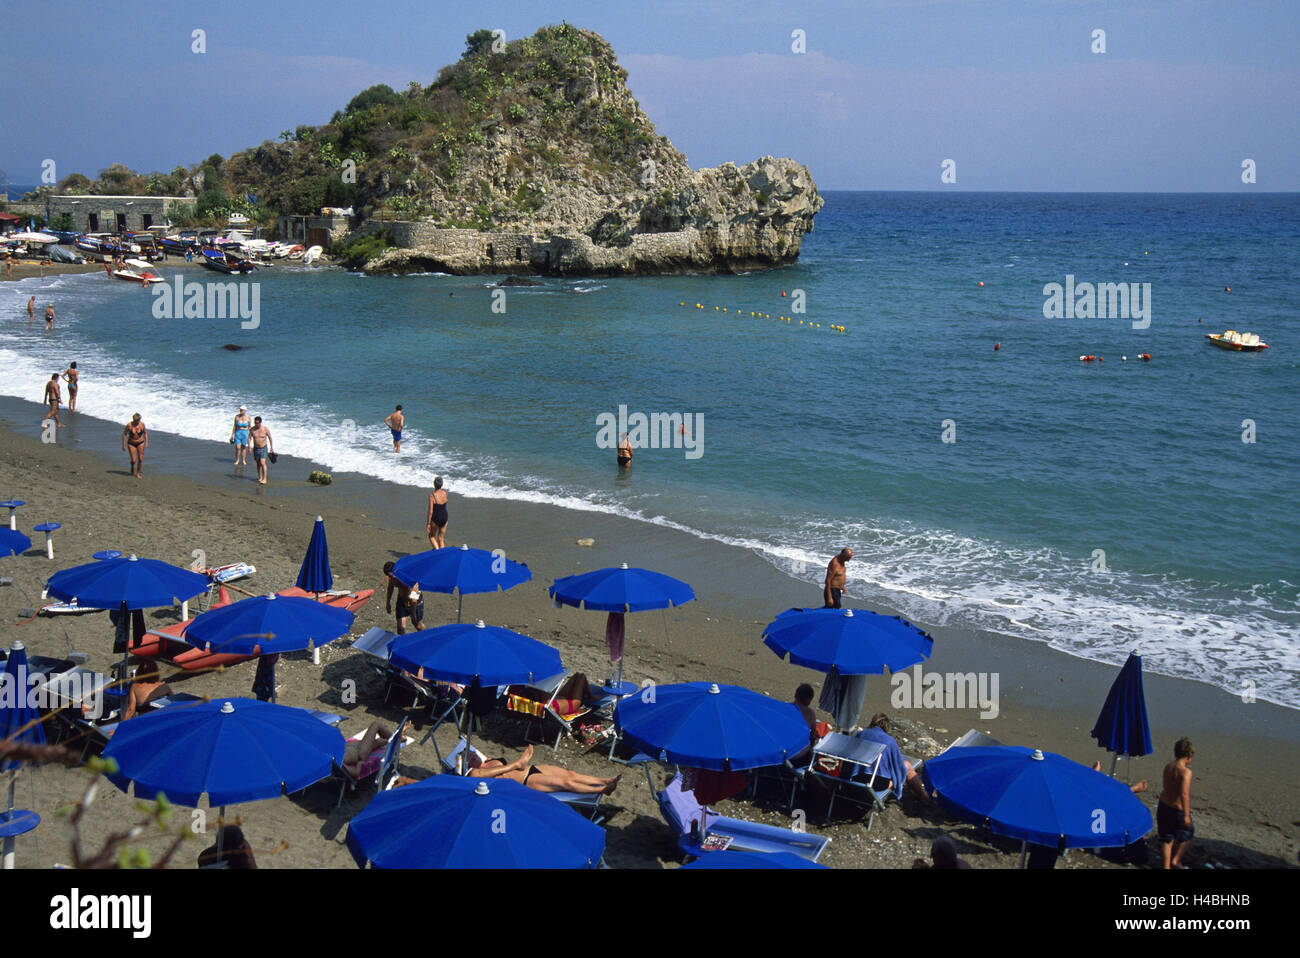 Italy, Sicily, Mazzaro, beach, sunshades, sea, rock, Stock Photo